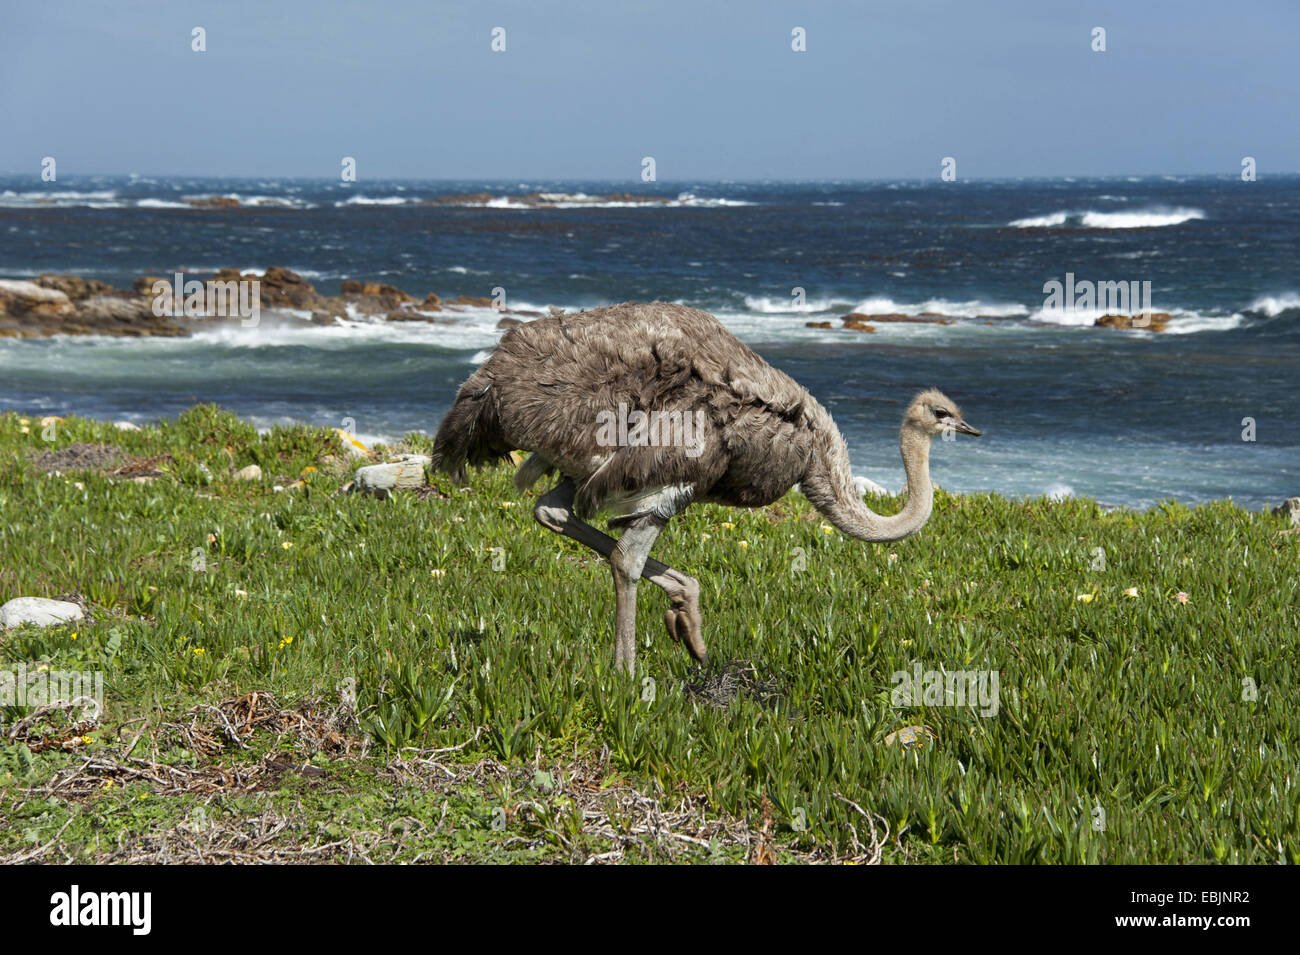 Autruche (Struthio camelus), marcher sur un pré à la côte atlantique, l'Afrique du Sud, Western Cape, Cape of Good Hope Banque D'Images